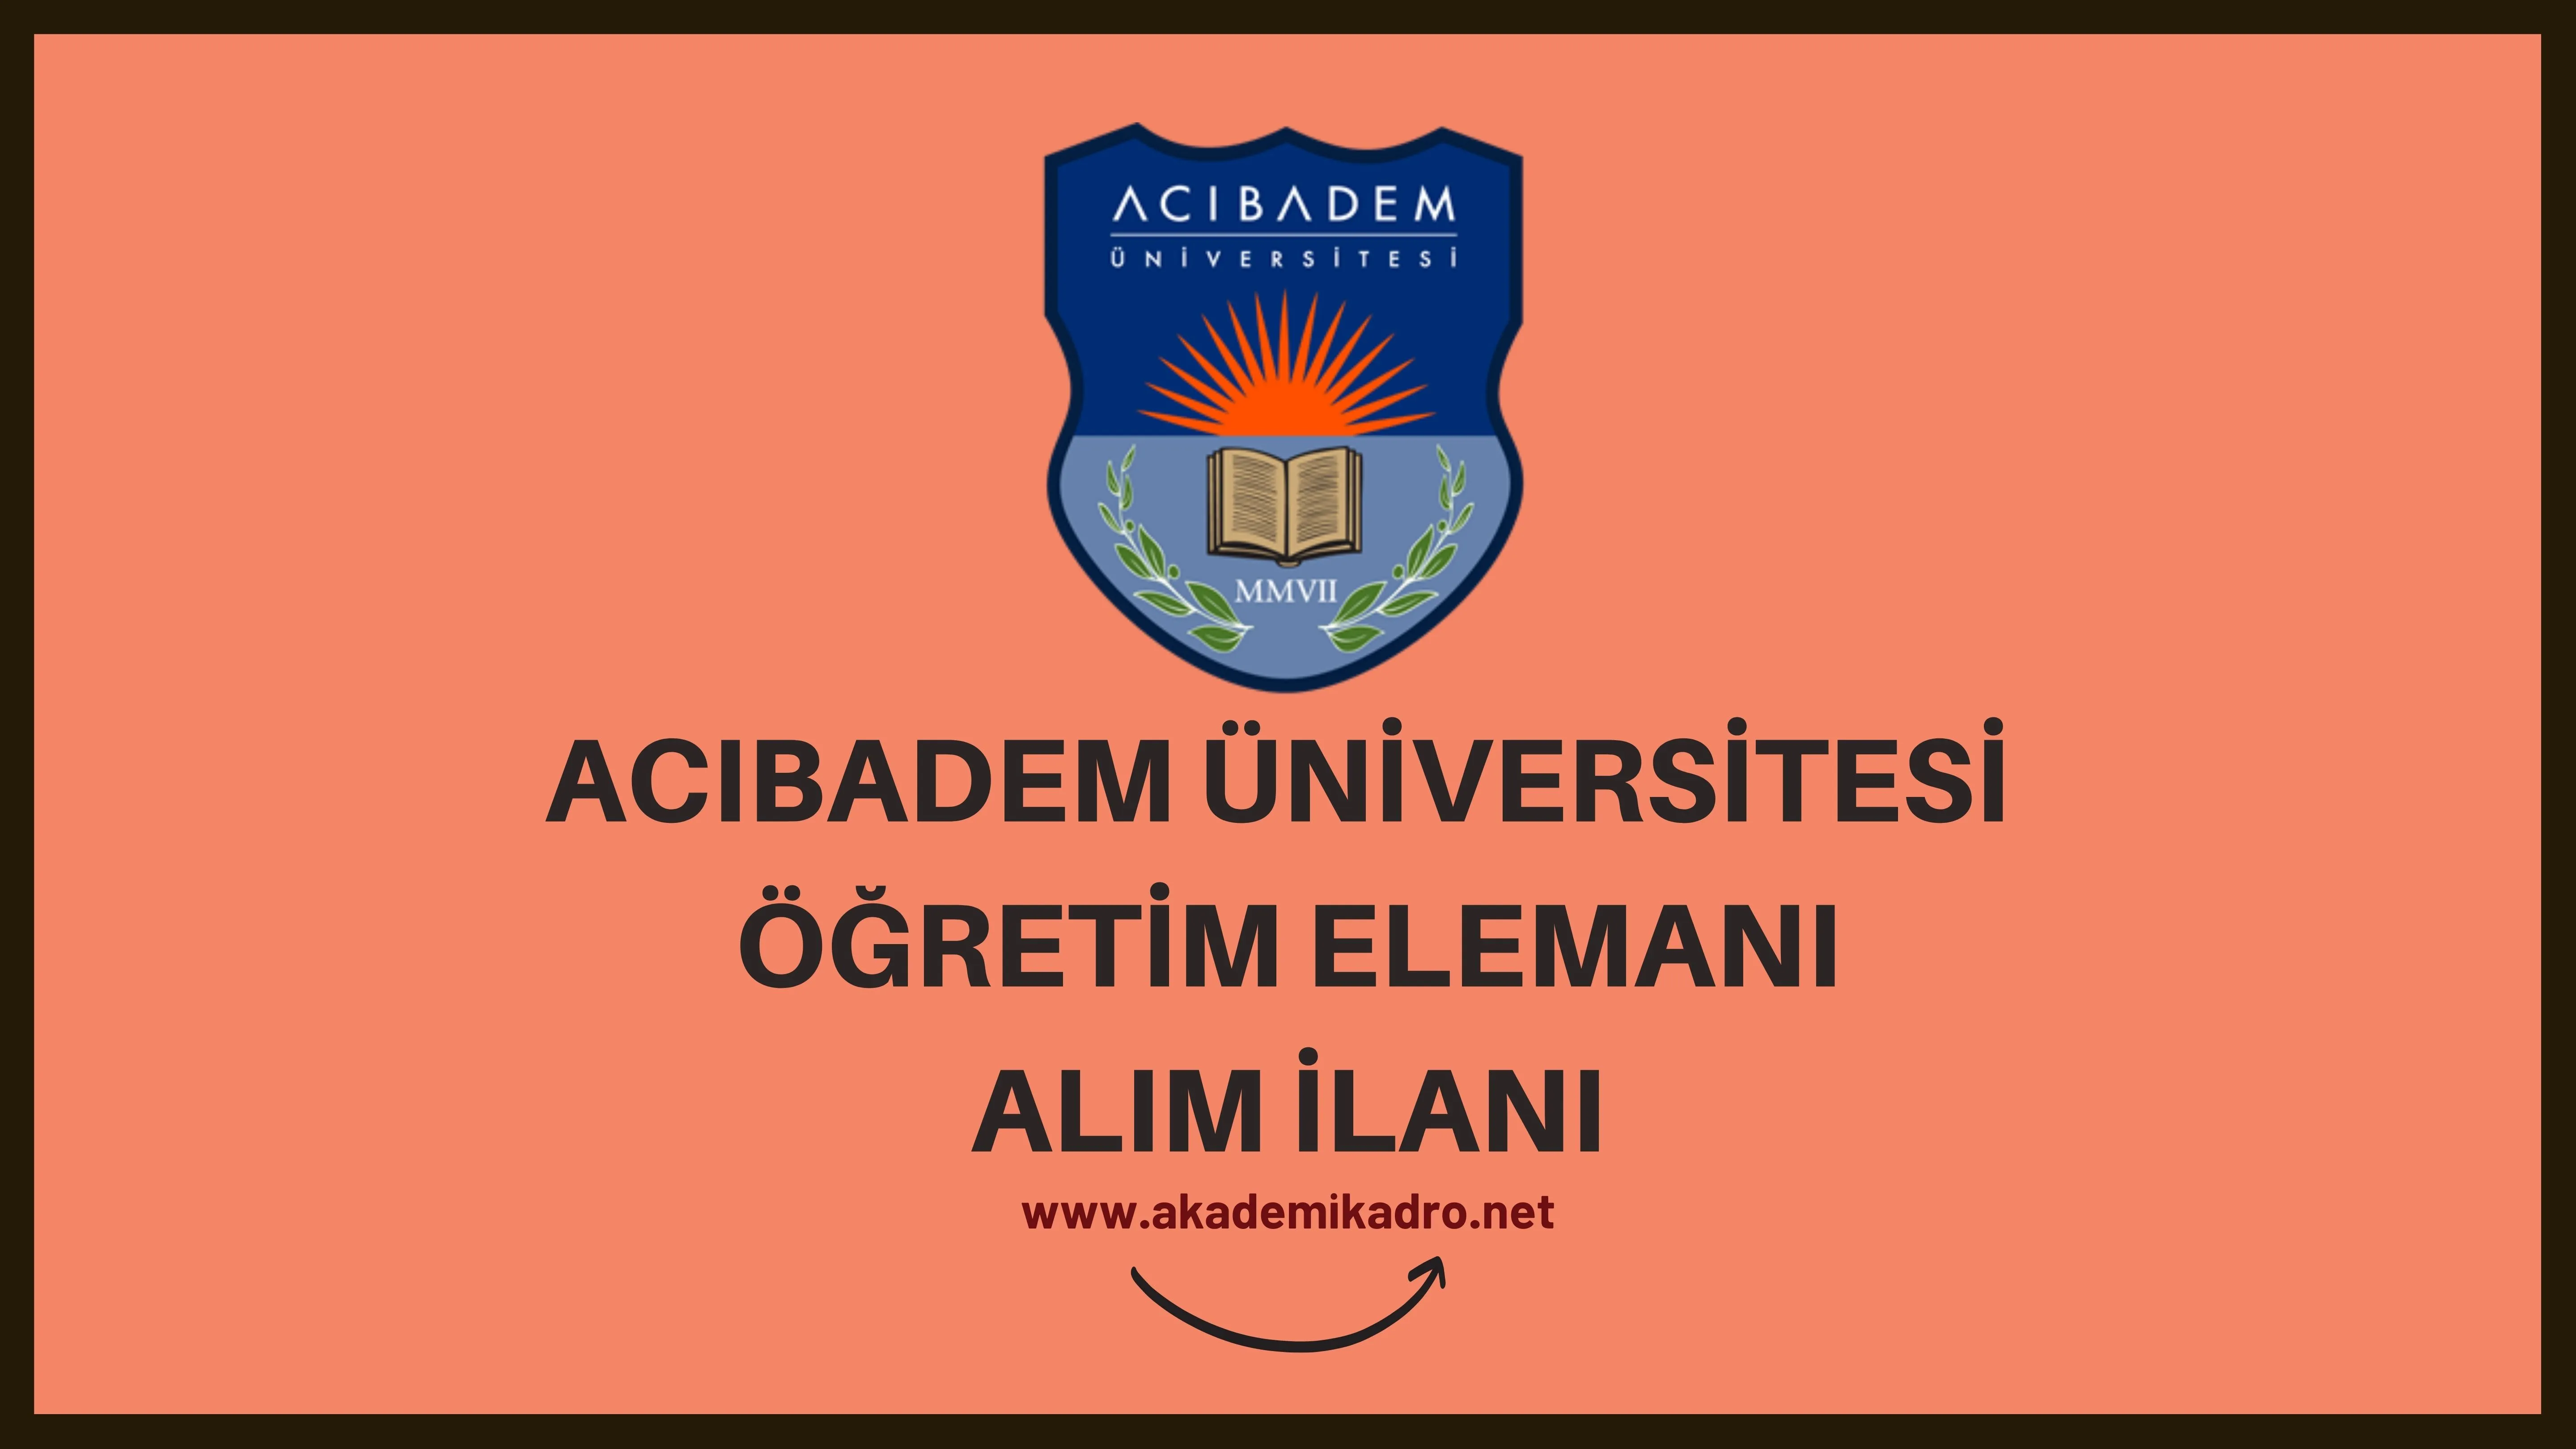 Acıbadem Mehmet Ali Aydınlar Üniversitesi 2 Araştırma görevlisi alacak. Son başvuru tarihi 24 Şubat 2023.